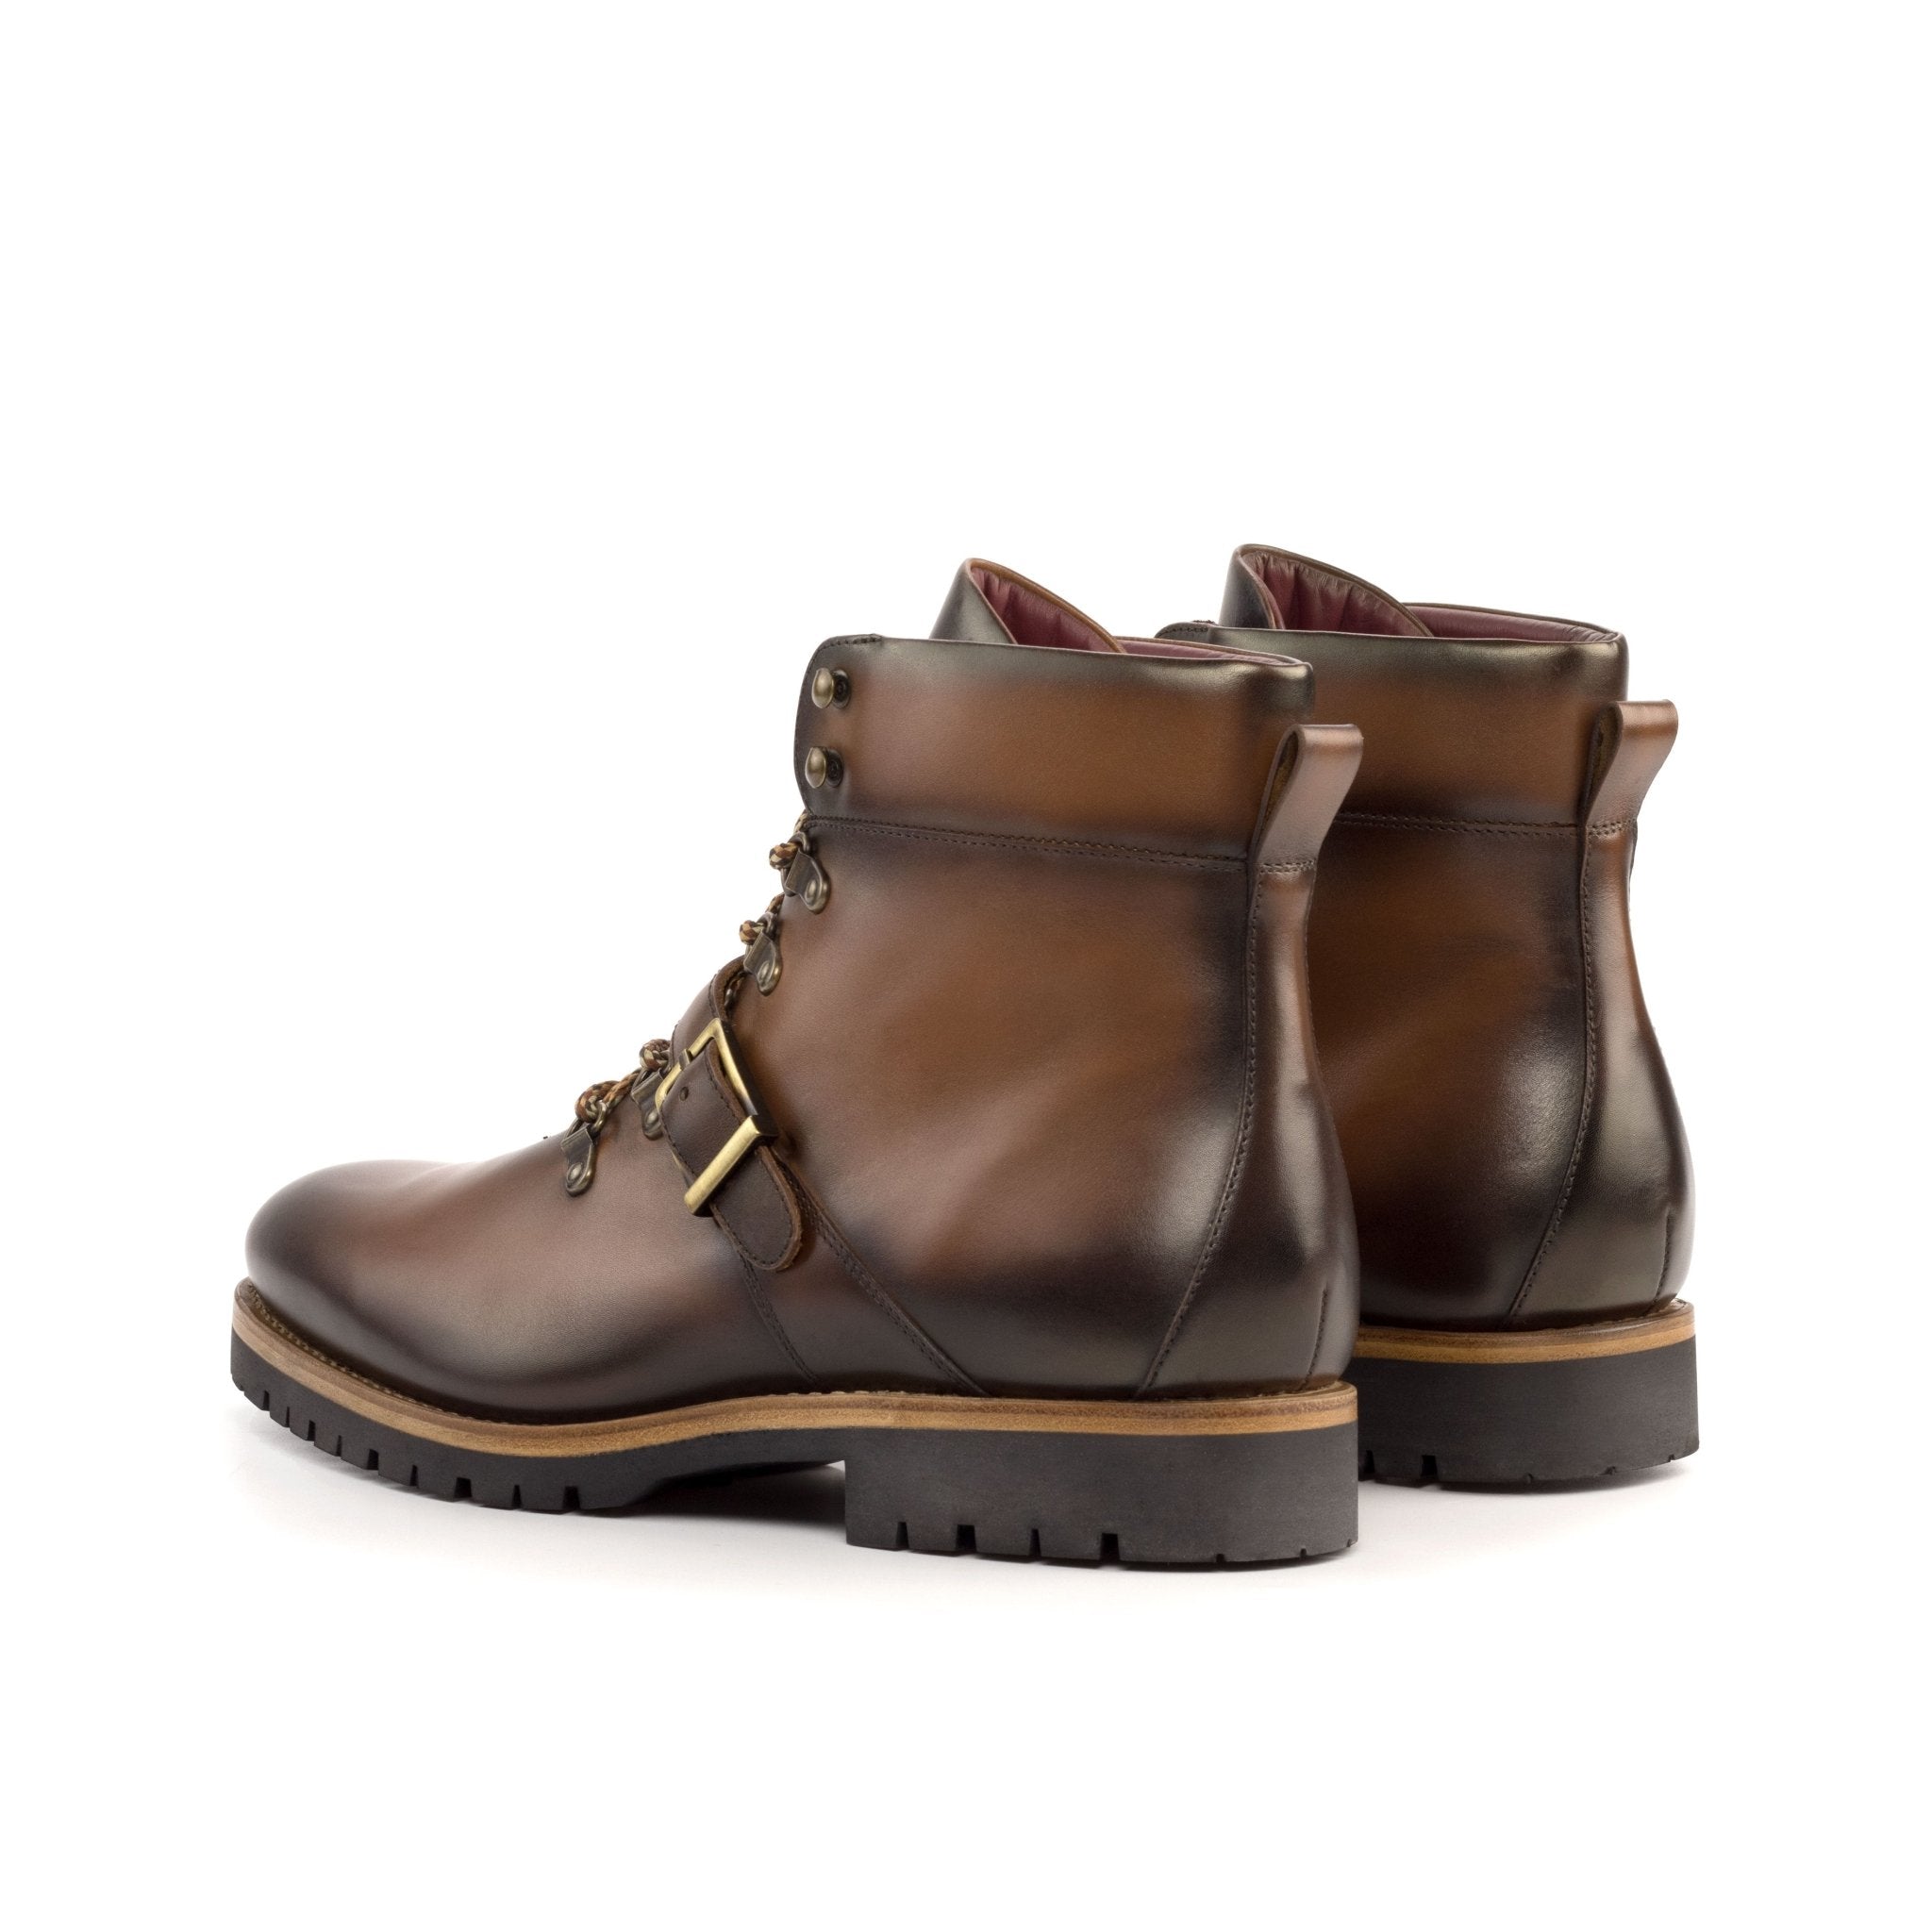 Men's Medium Brown Hiking Boots with Commando Sole - Maison de Kingsley Couture Harmonie et Fureur Spain